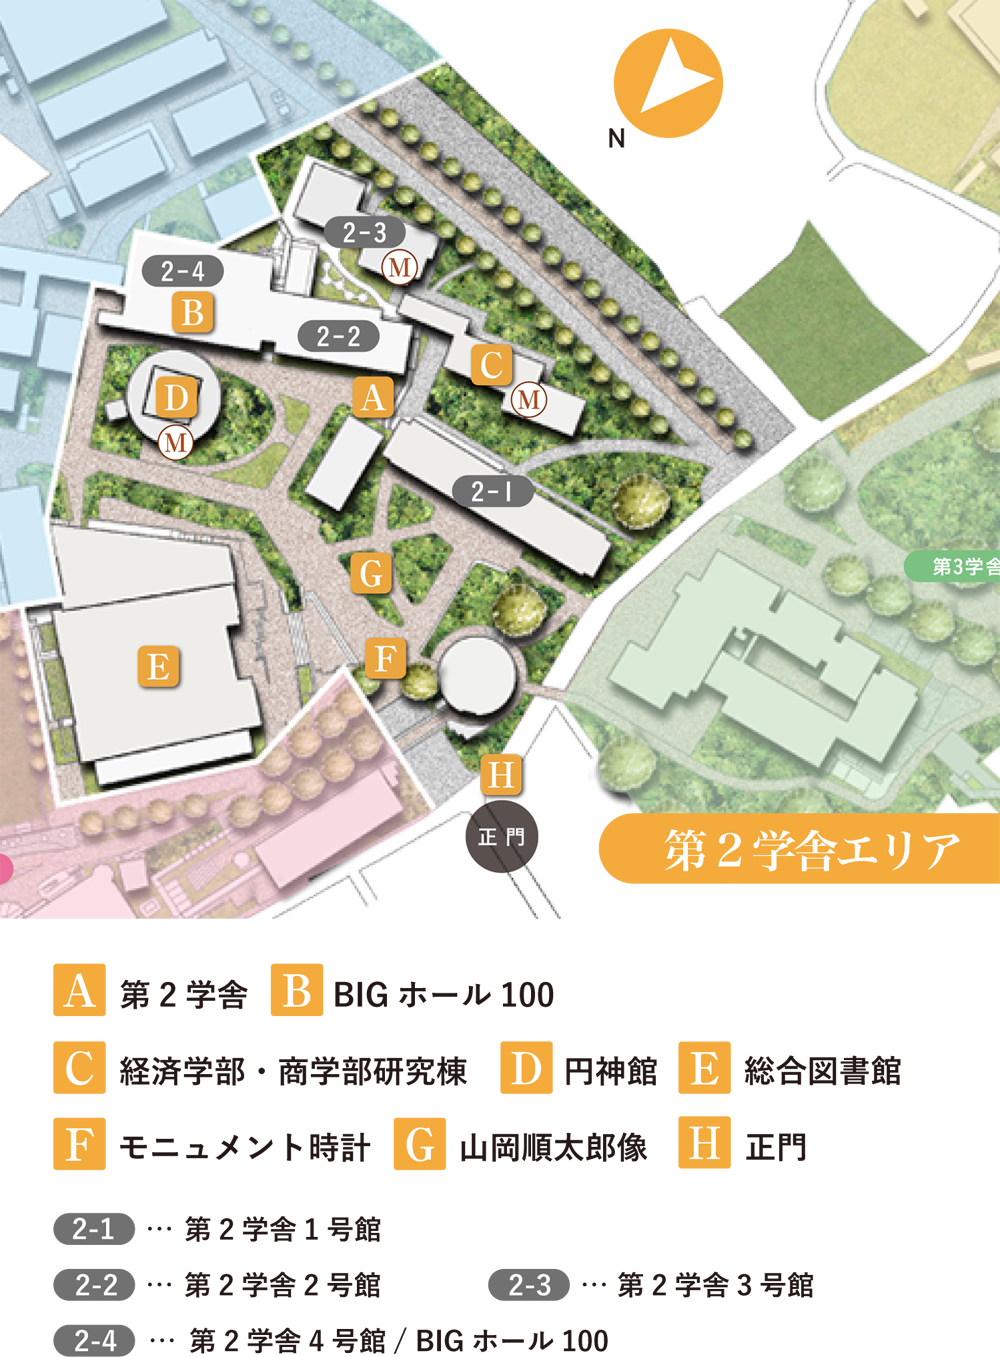 第2学舎エリア 関西大学 Campus Guide Map